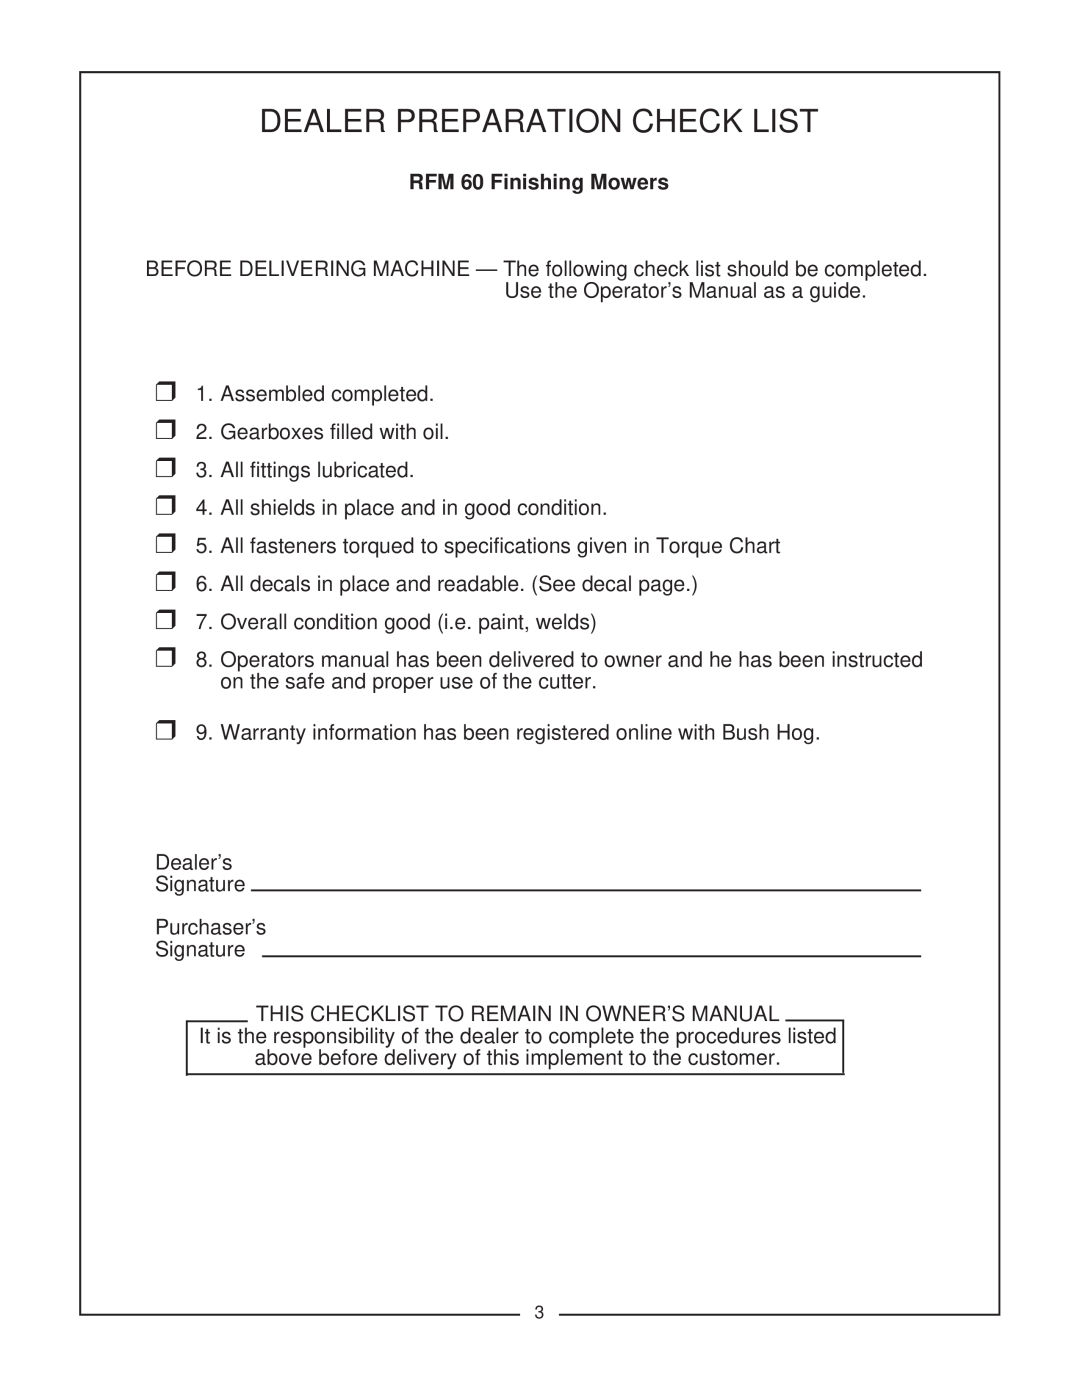 Bush Hog manual Dealer Preparation Check List, RFM 60 Finishing Mowers 